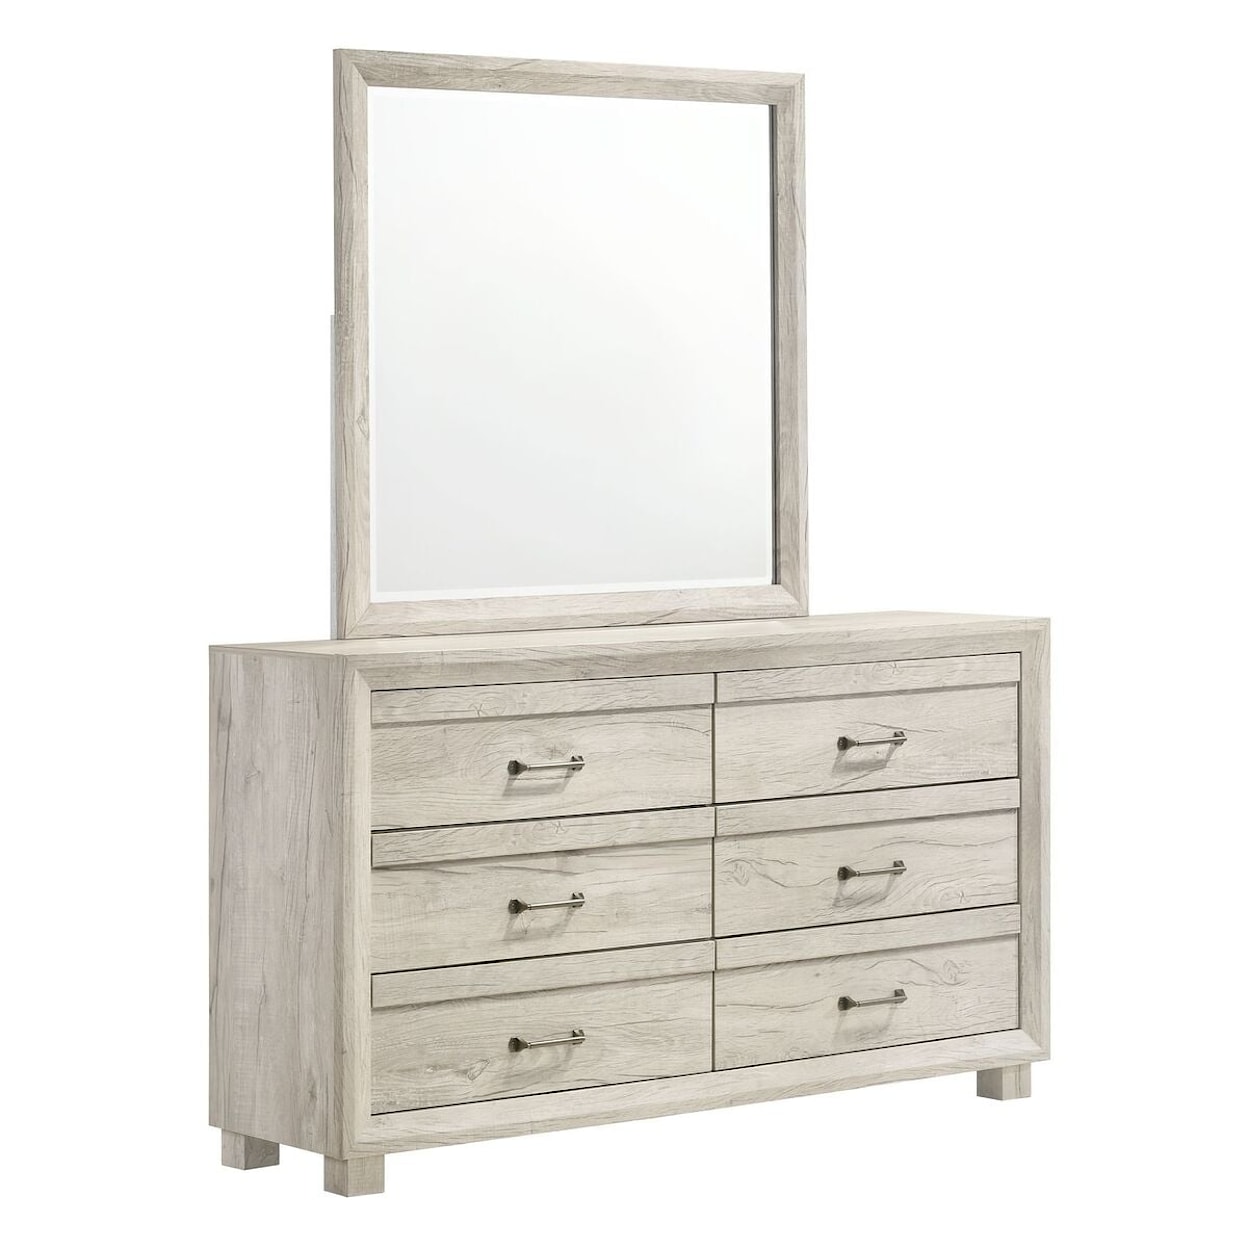 Elements International Fort Worth White Dresser & Mirror